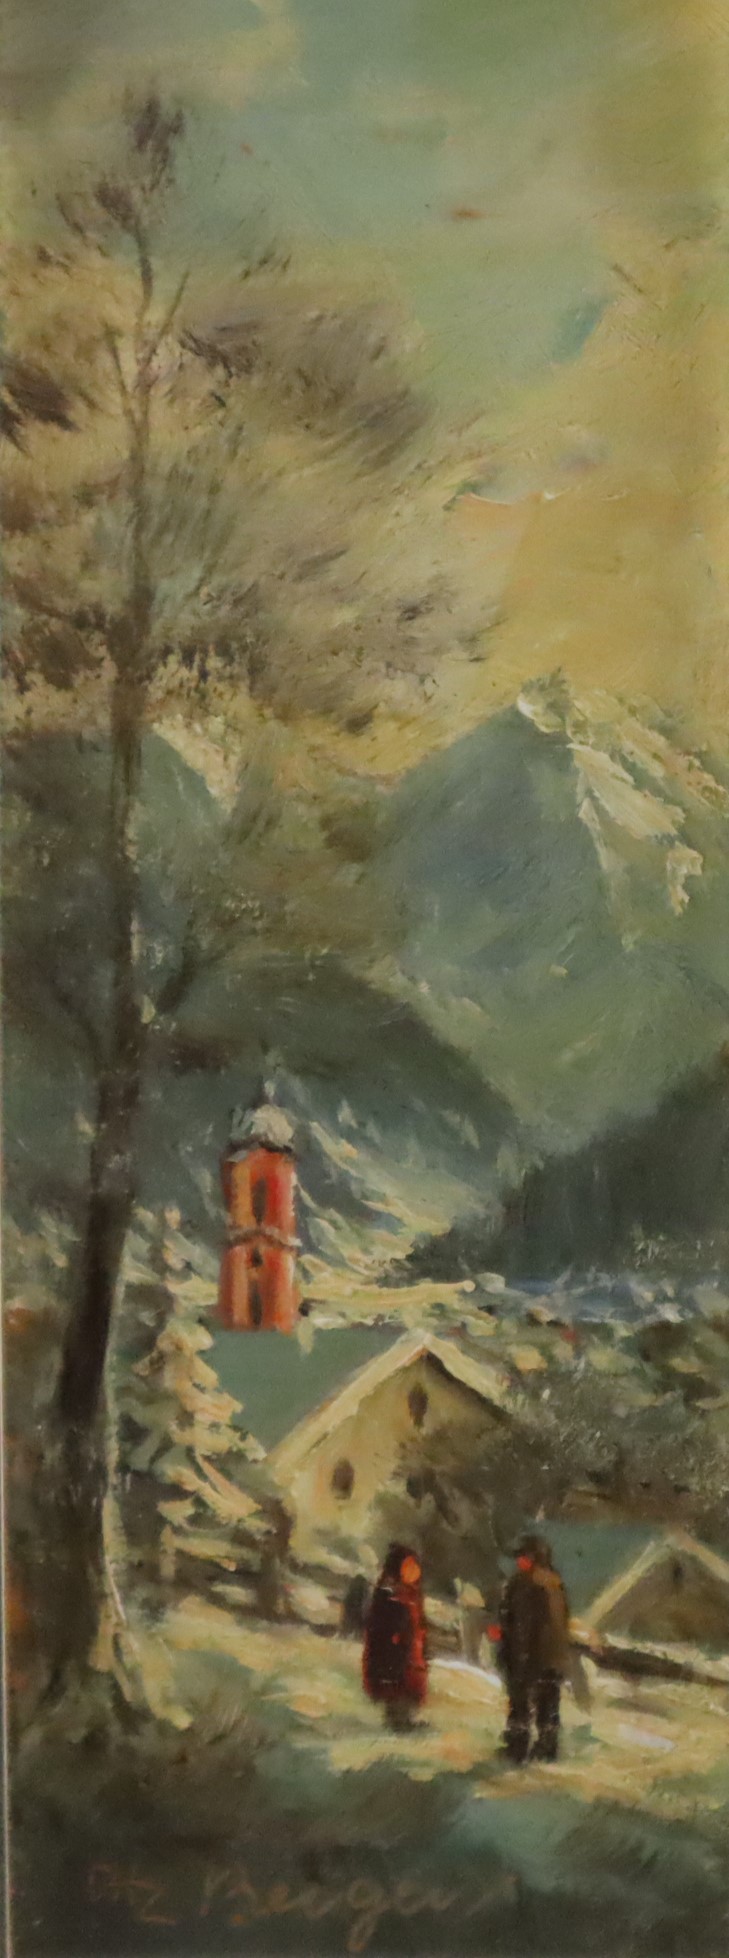 Berger, Heinrich (geb. 1898 München -1977, Landschaftsmaler, Mitglied im Kunstverein München) - "Im